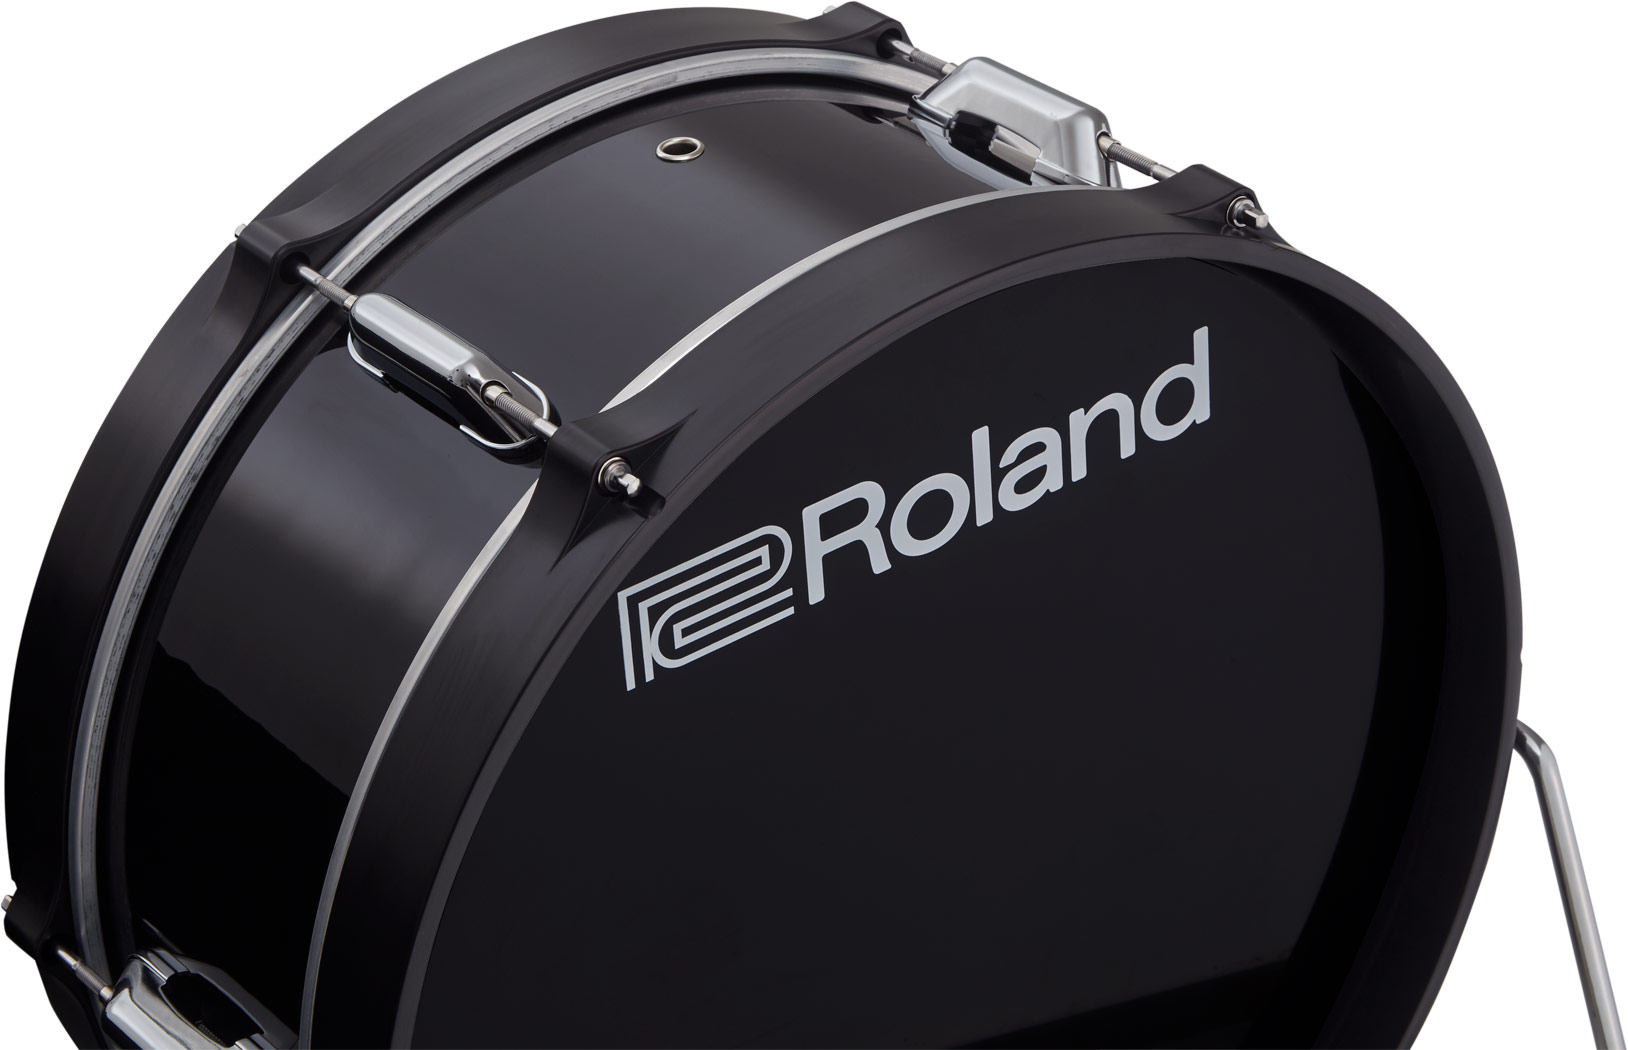 Roland Kd 180 Digital Kick Drum Pad 18 - E-Drums Pad - Variation 2